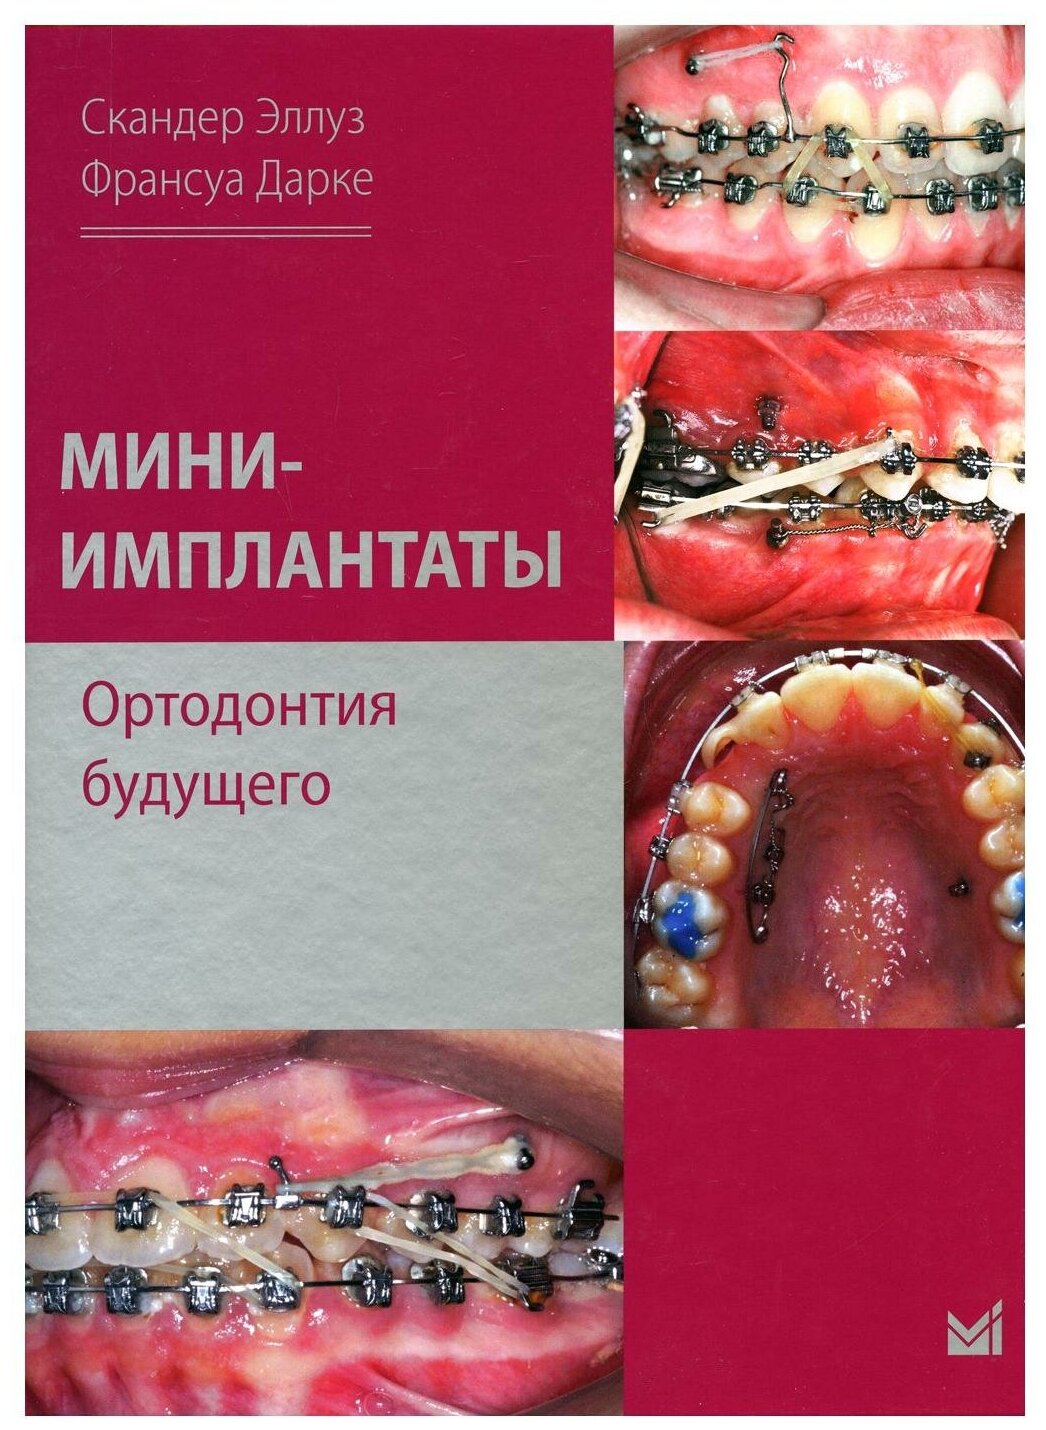 Мини-имплантаты Ортодонтия будущего - фото №1